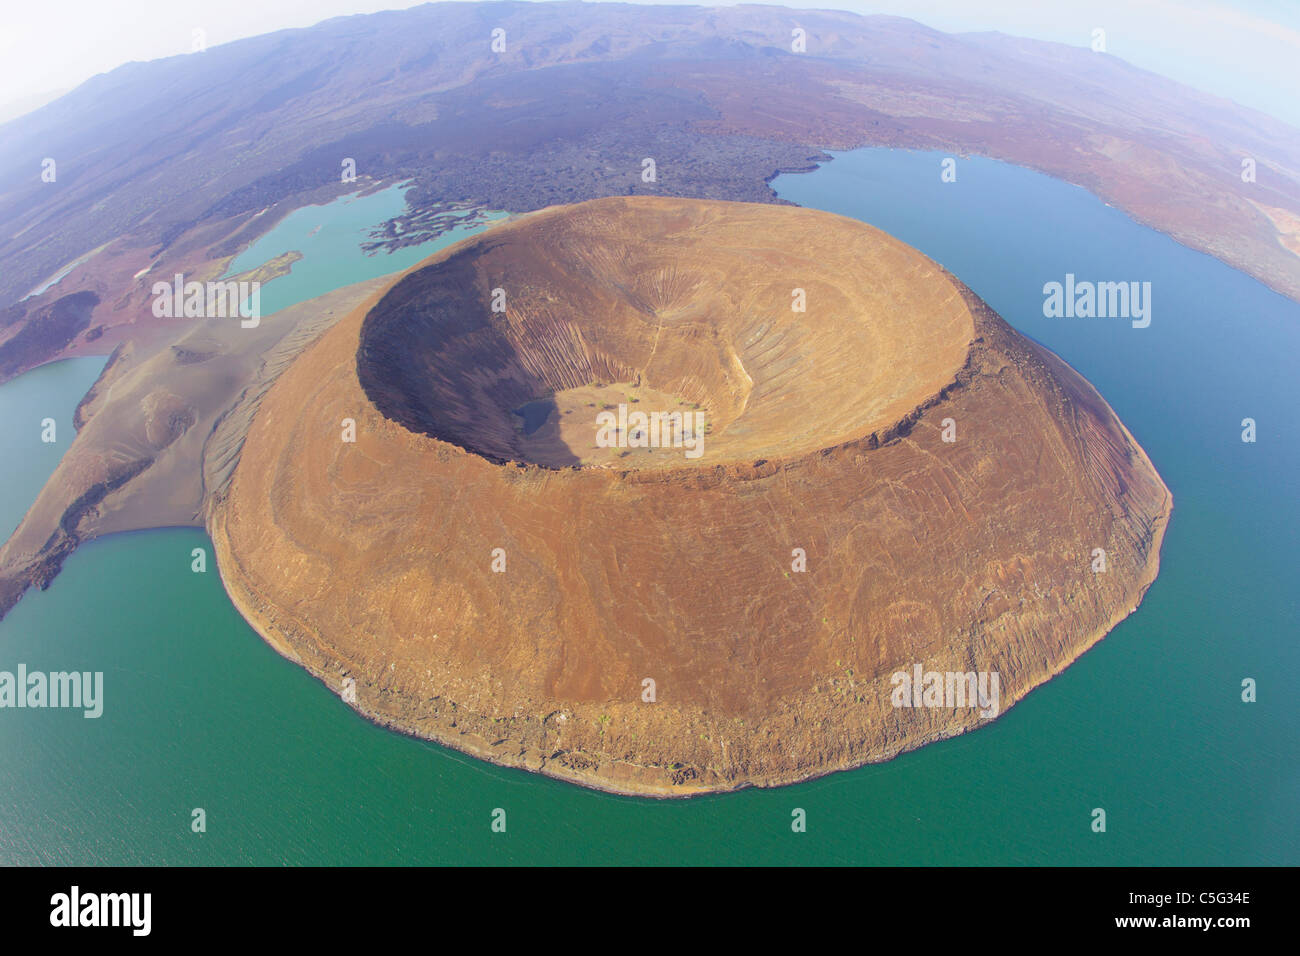 Le Lac Turkana est situé dans la Grande Vallée du Rift au Kenya.C'est le plus grand lac de désert. Banque D'Images